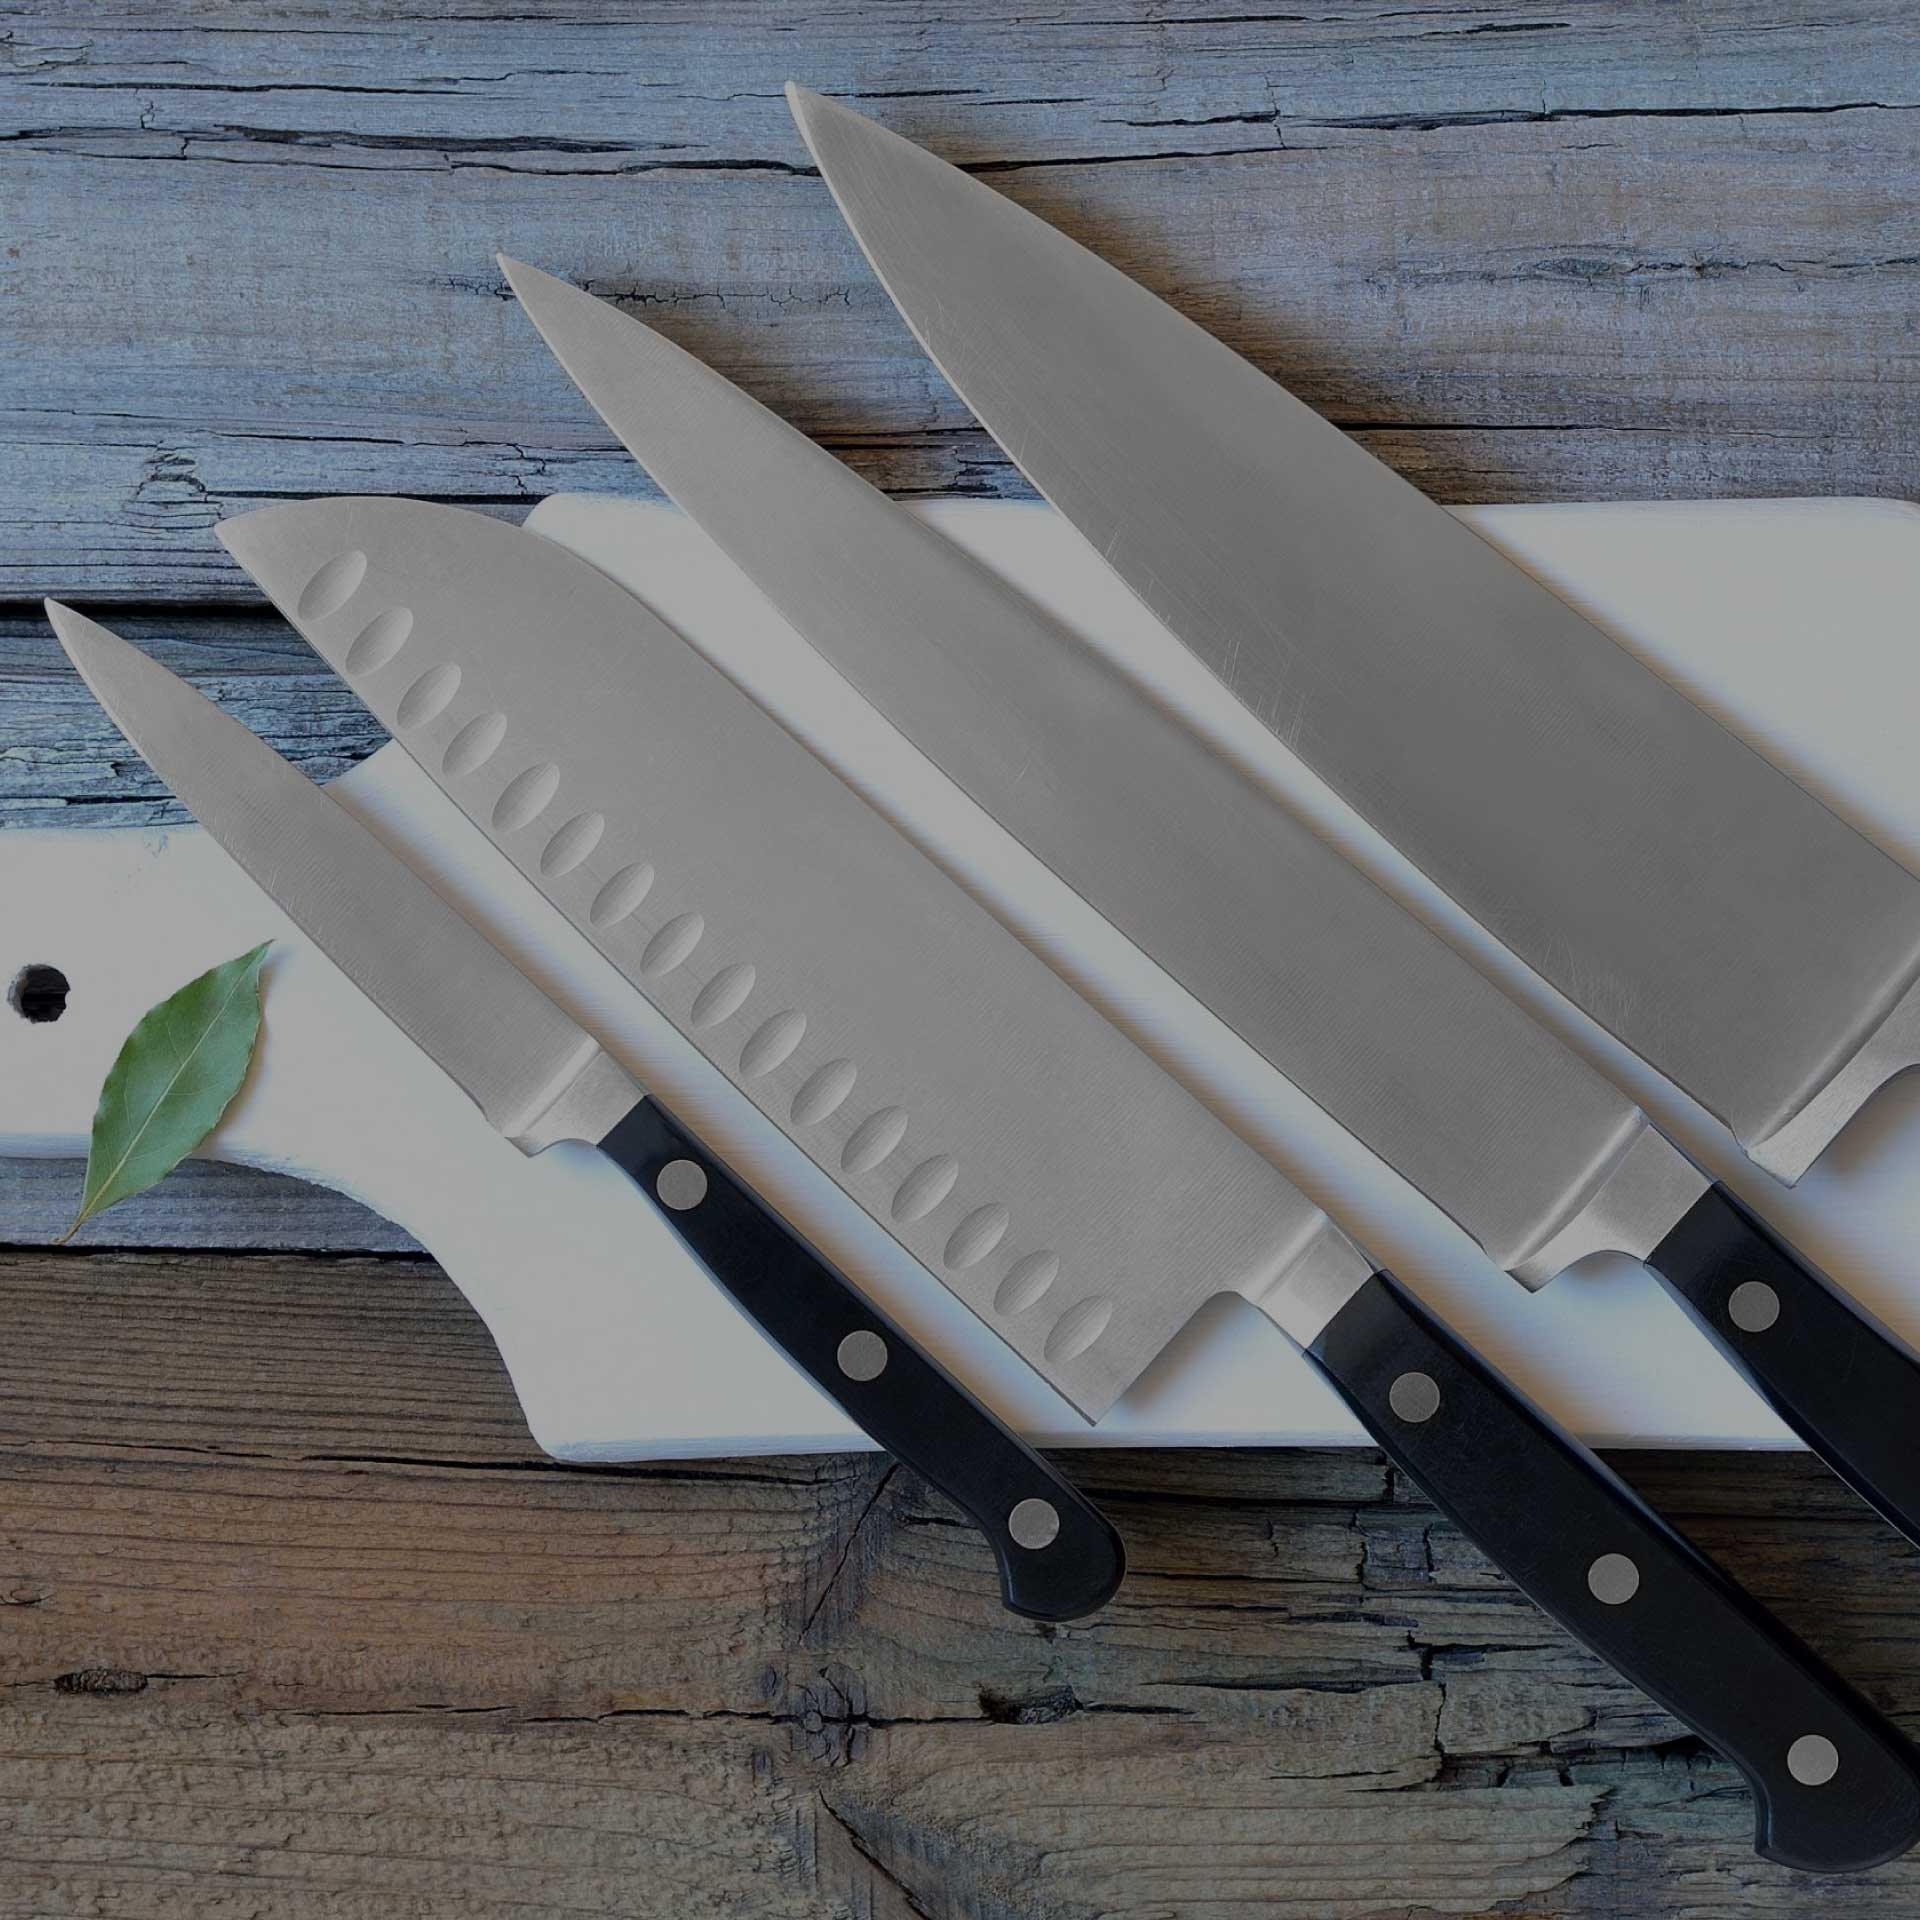 Afilador de cuchillos profesional, de la marca Brod & Taylor